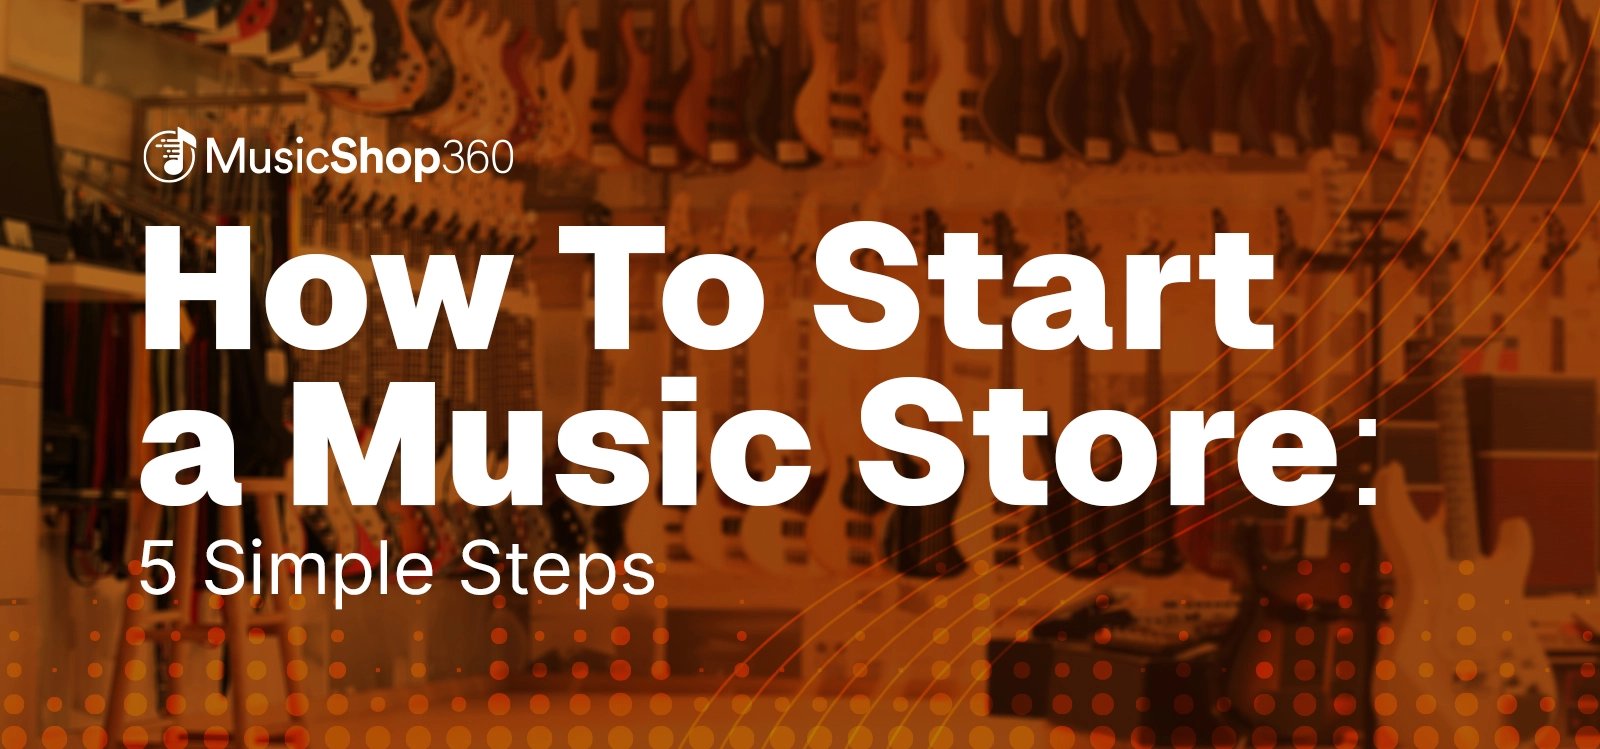 MS360-CTA-Start-Music-Store2